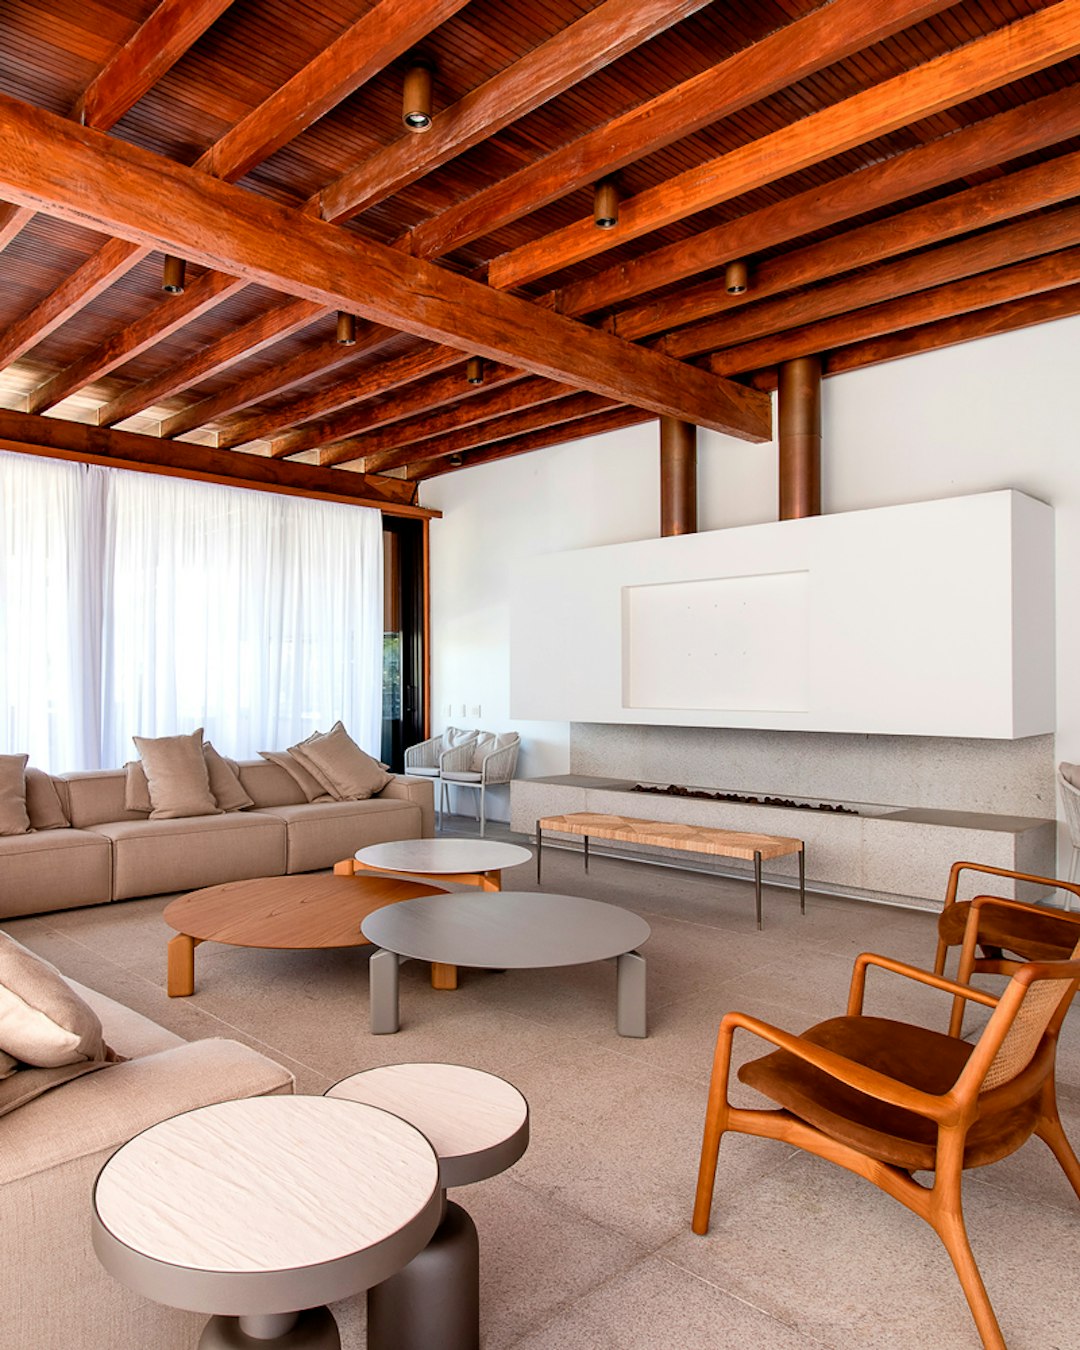 Imagem de detalhes de uma sala com moveis na apresentação da arquitetura do ambiente fotografado